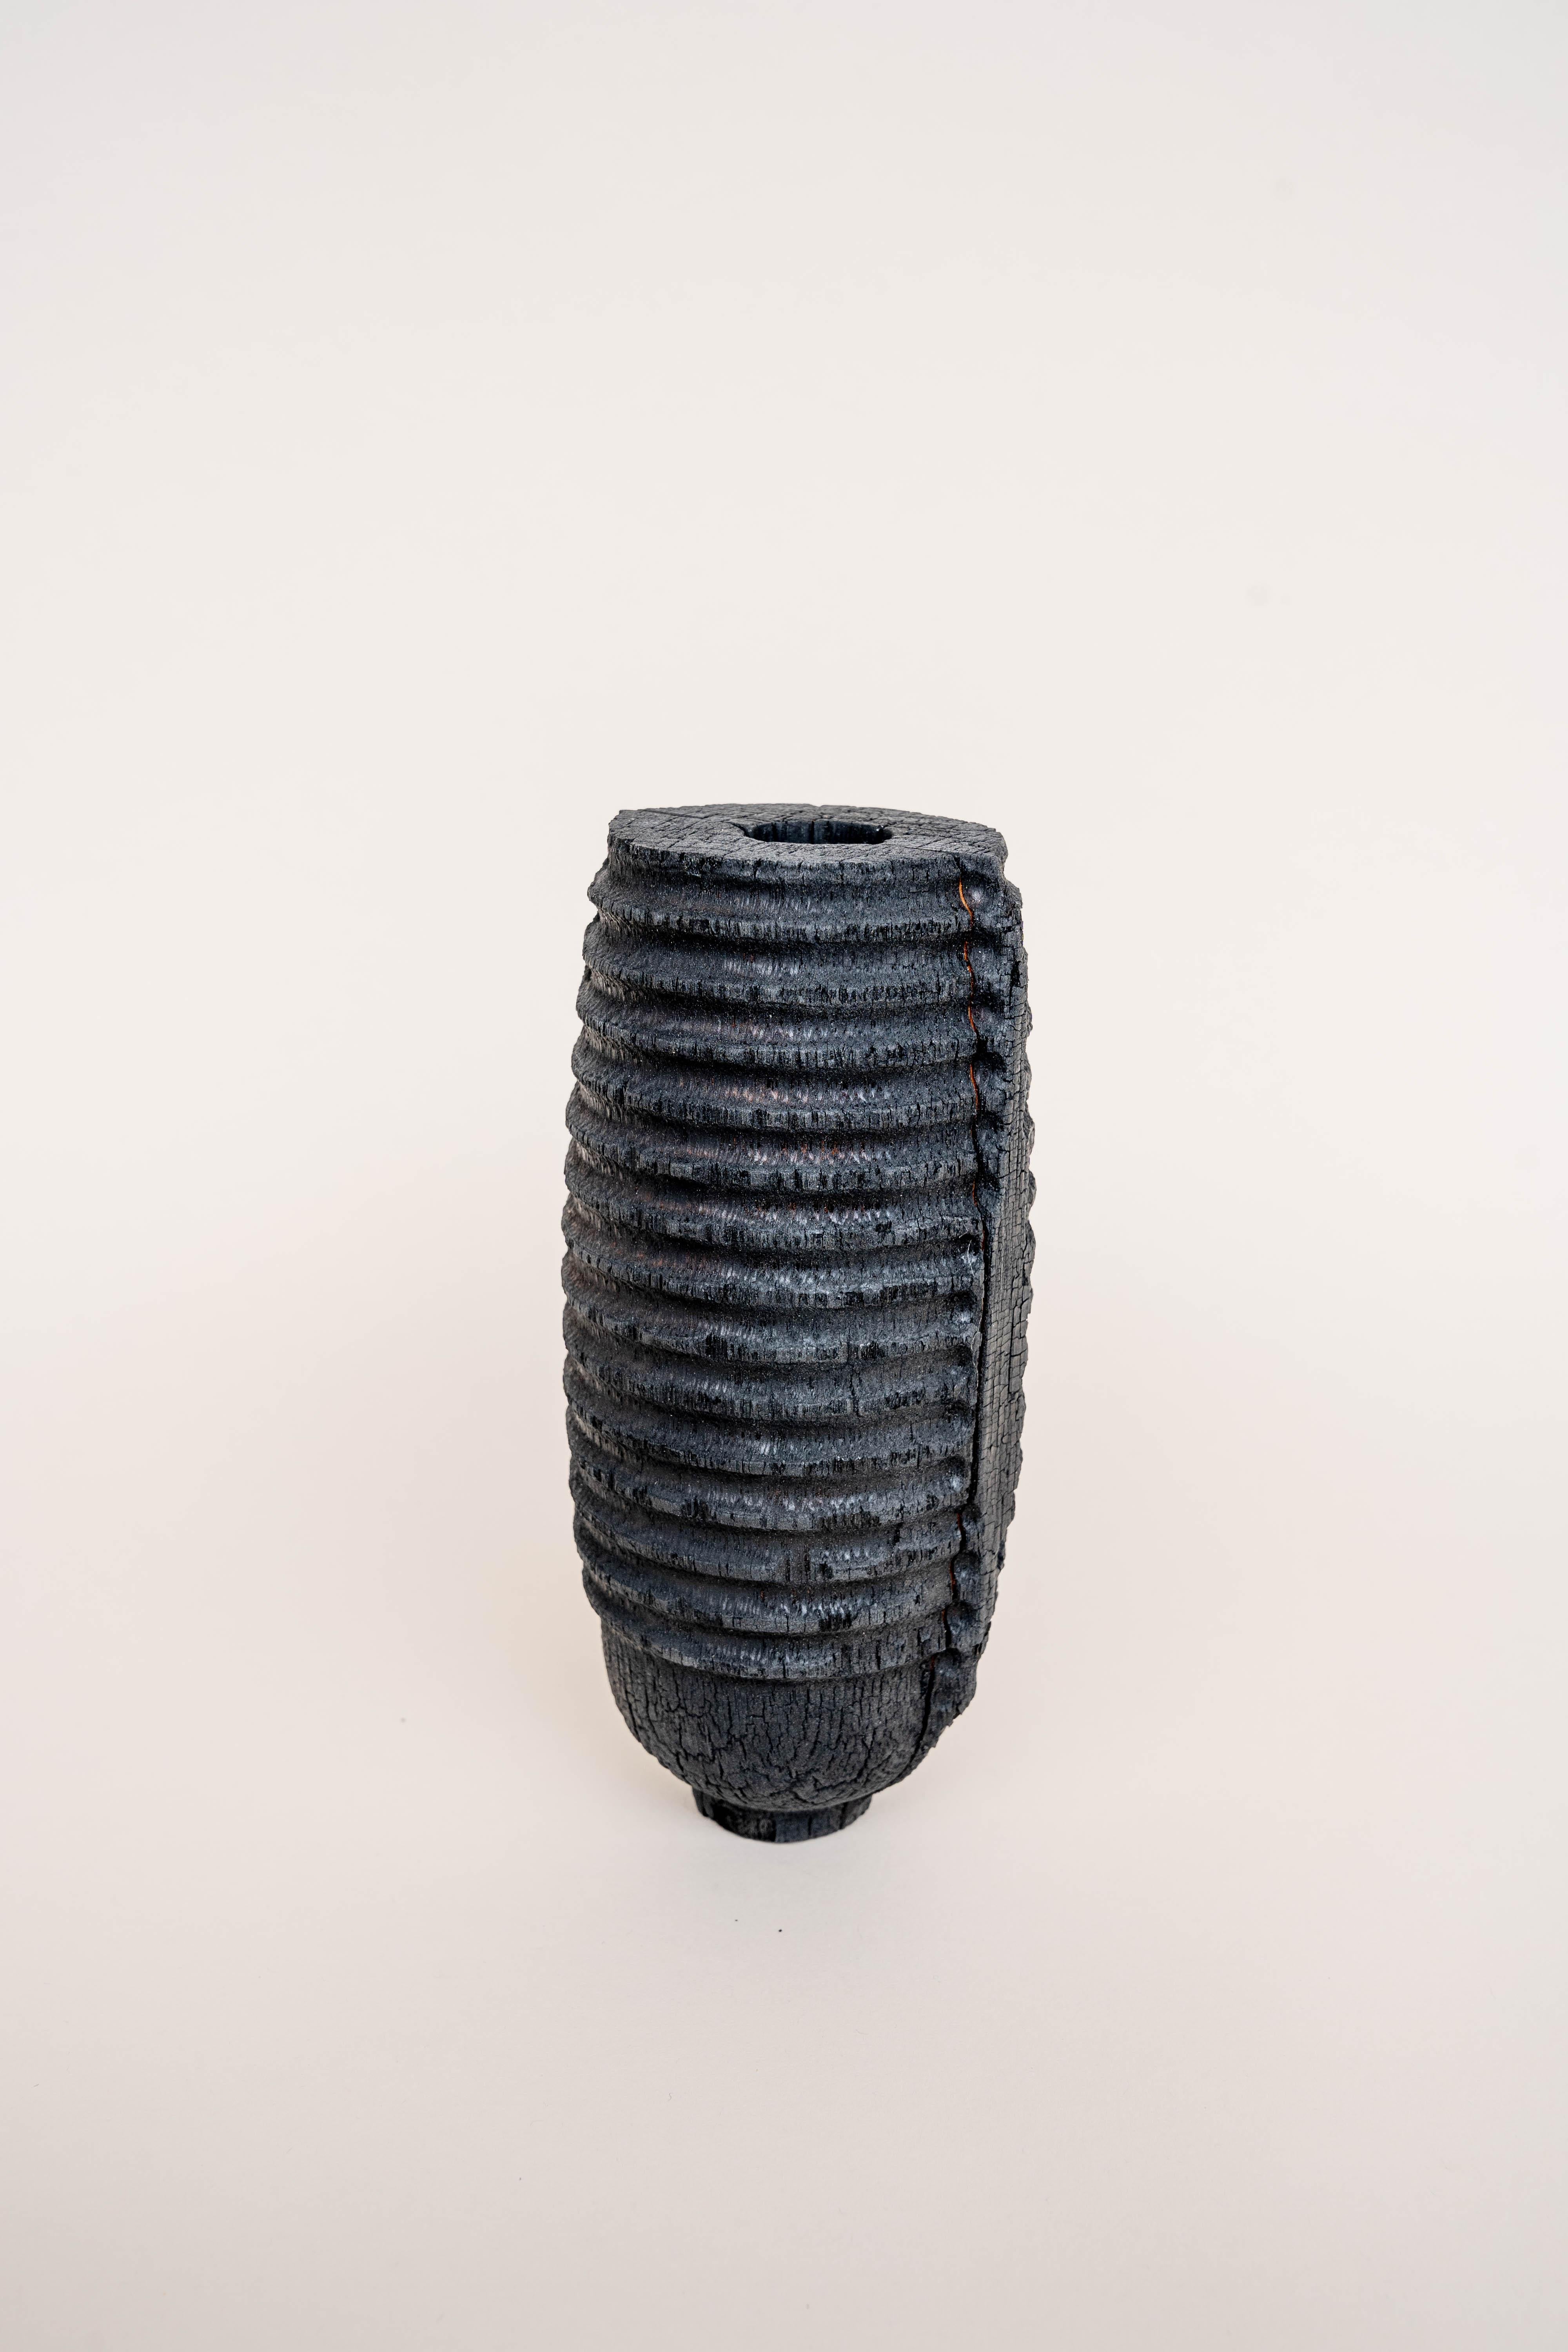 Israeli Wide Burnt Vase by Daniel Elkayam For Sale